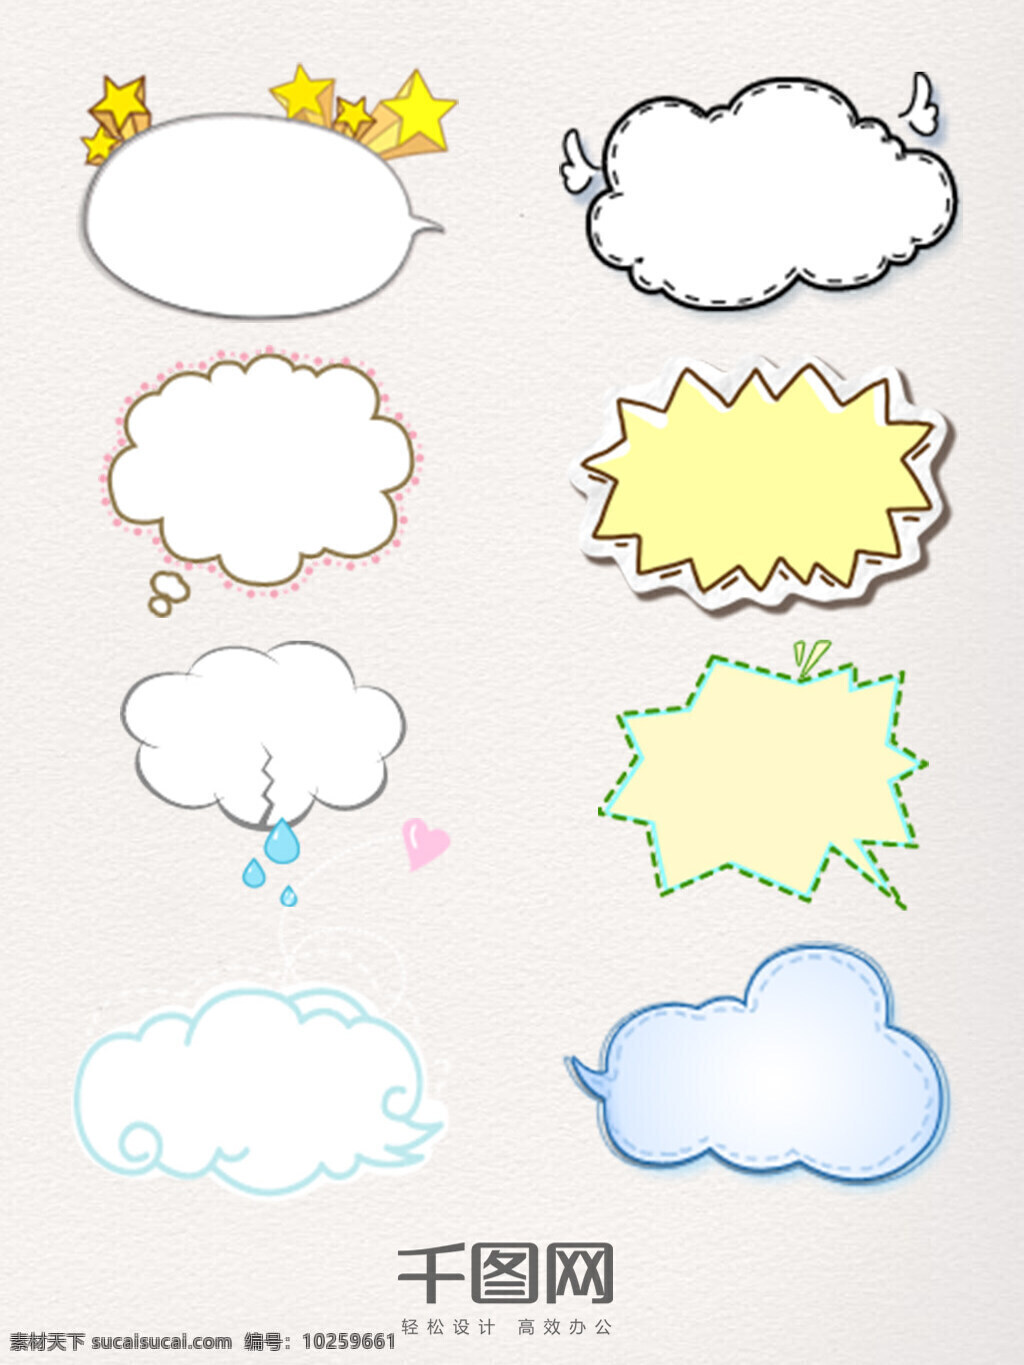 卡通 会话 气泡 装饰 星星装饰 云朵 会话气泡 简约 对话框 手绘线条 psd素材 装饰边框